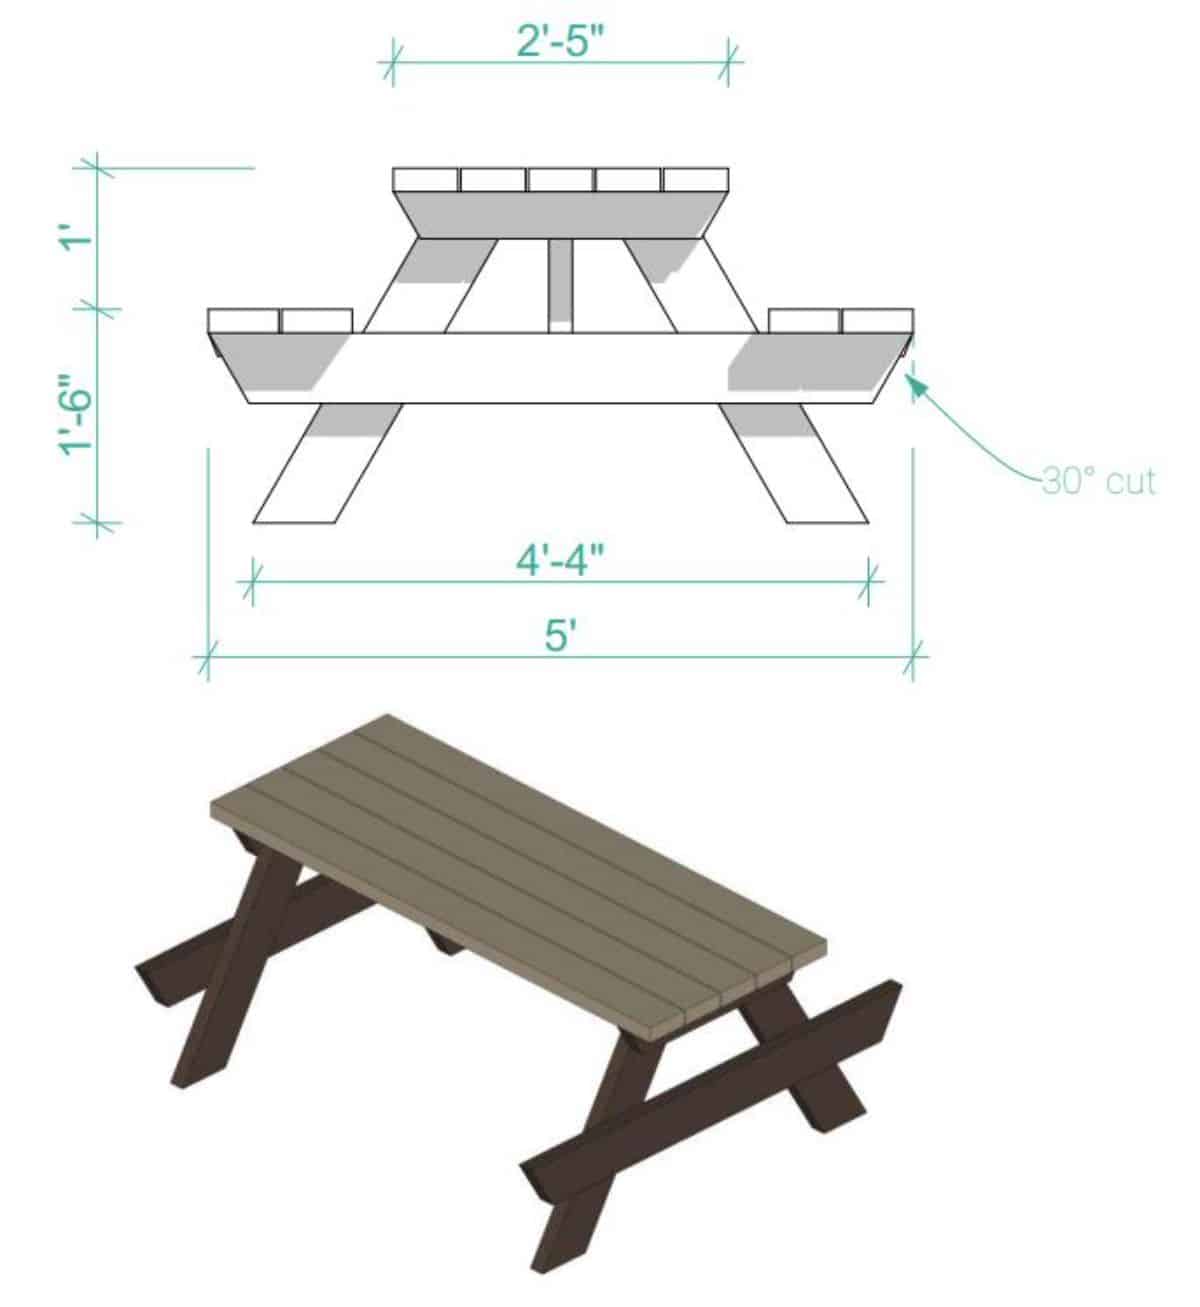 如何自制野餐桌-第三步:安装座椅支架